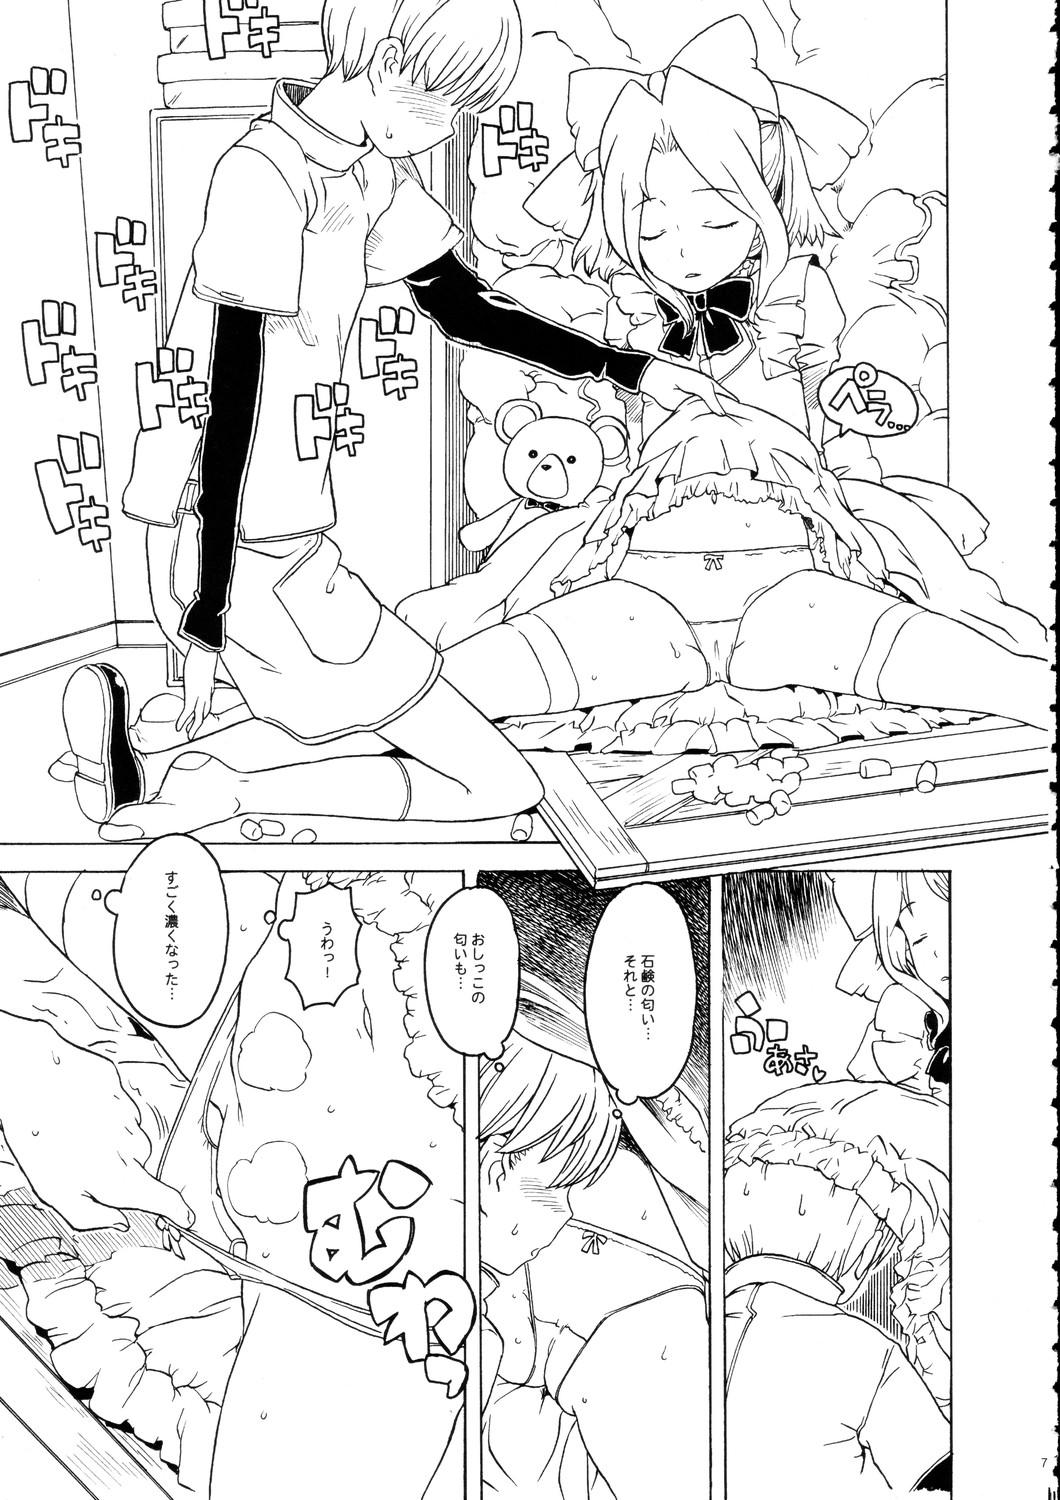 Ball Busting Minna Igai no Neta Vol 2 - Sakura taisen Di gi charat Lucu lucu Pussysex - Page 7